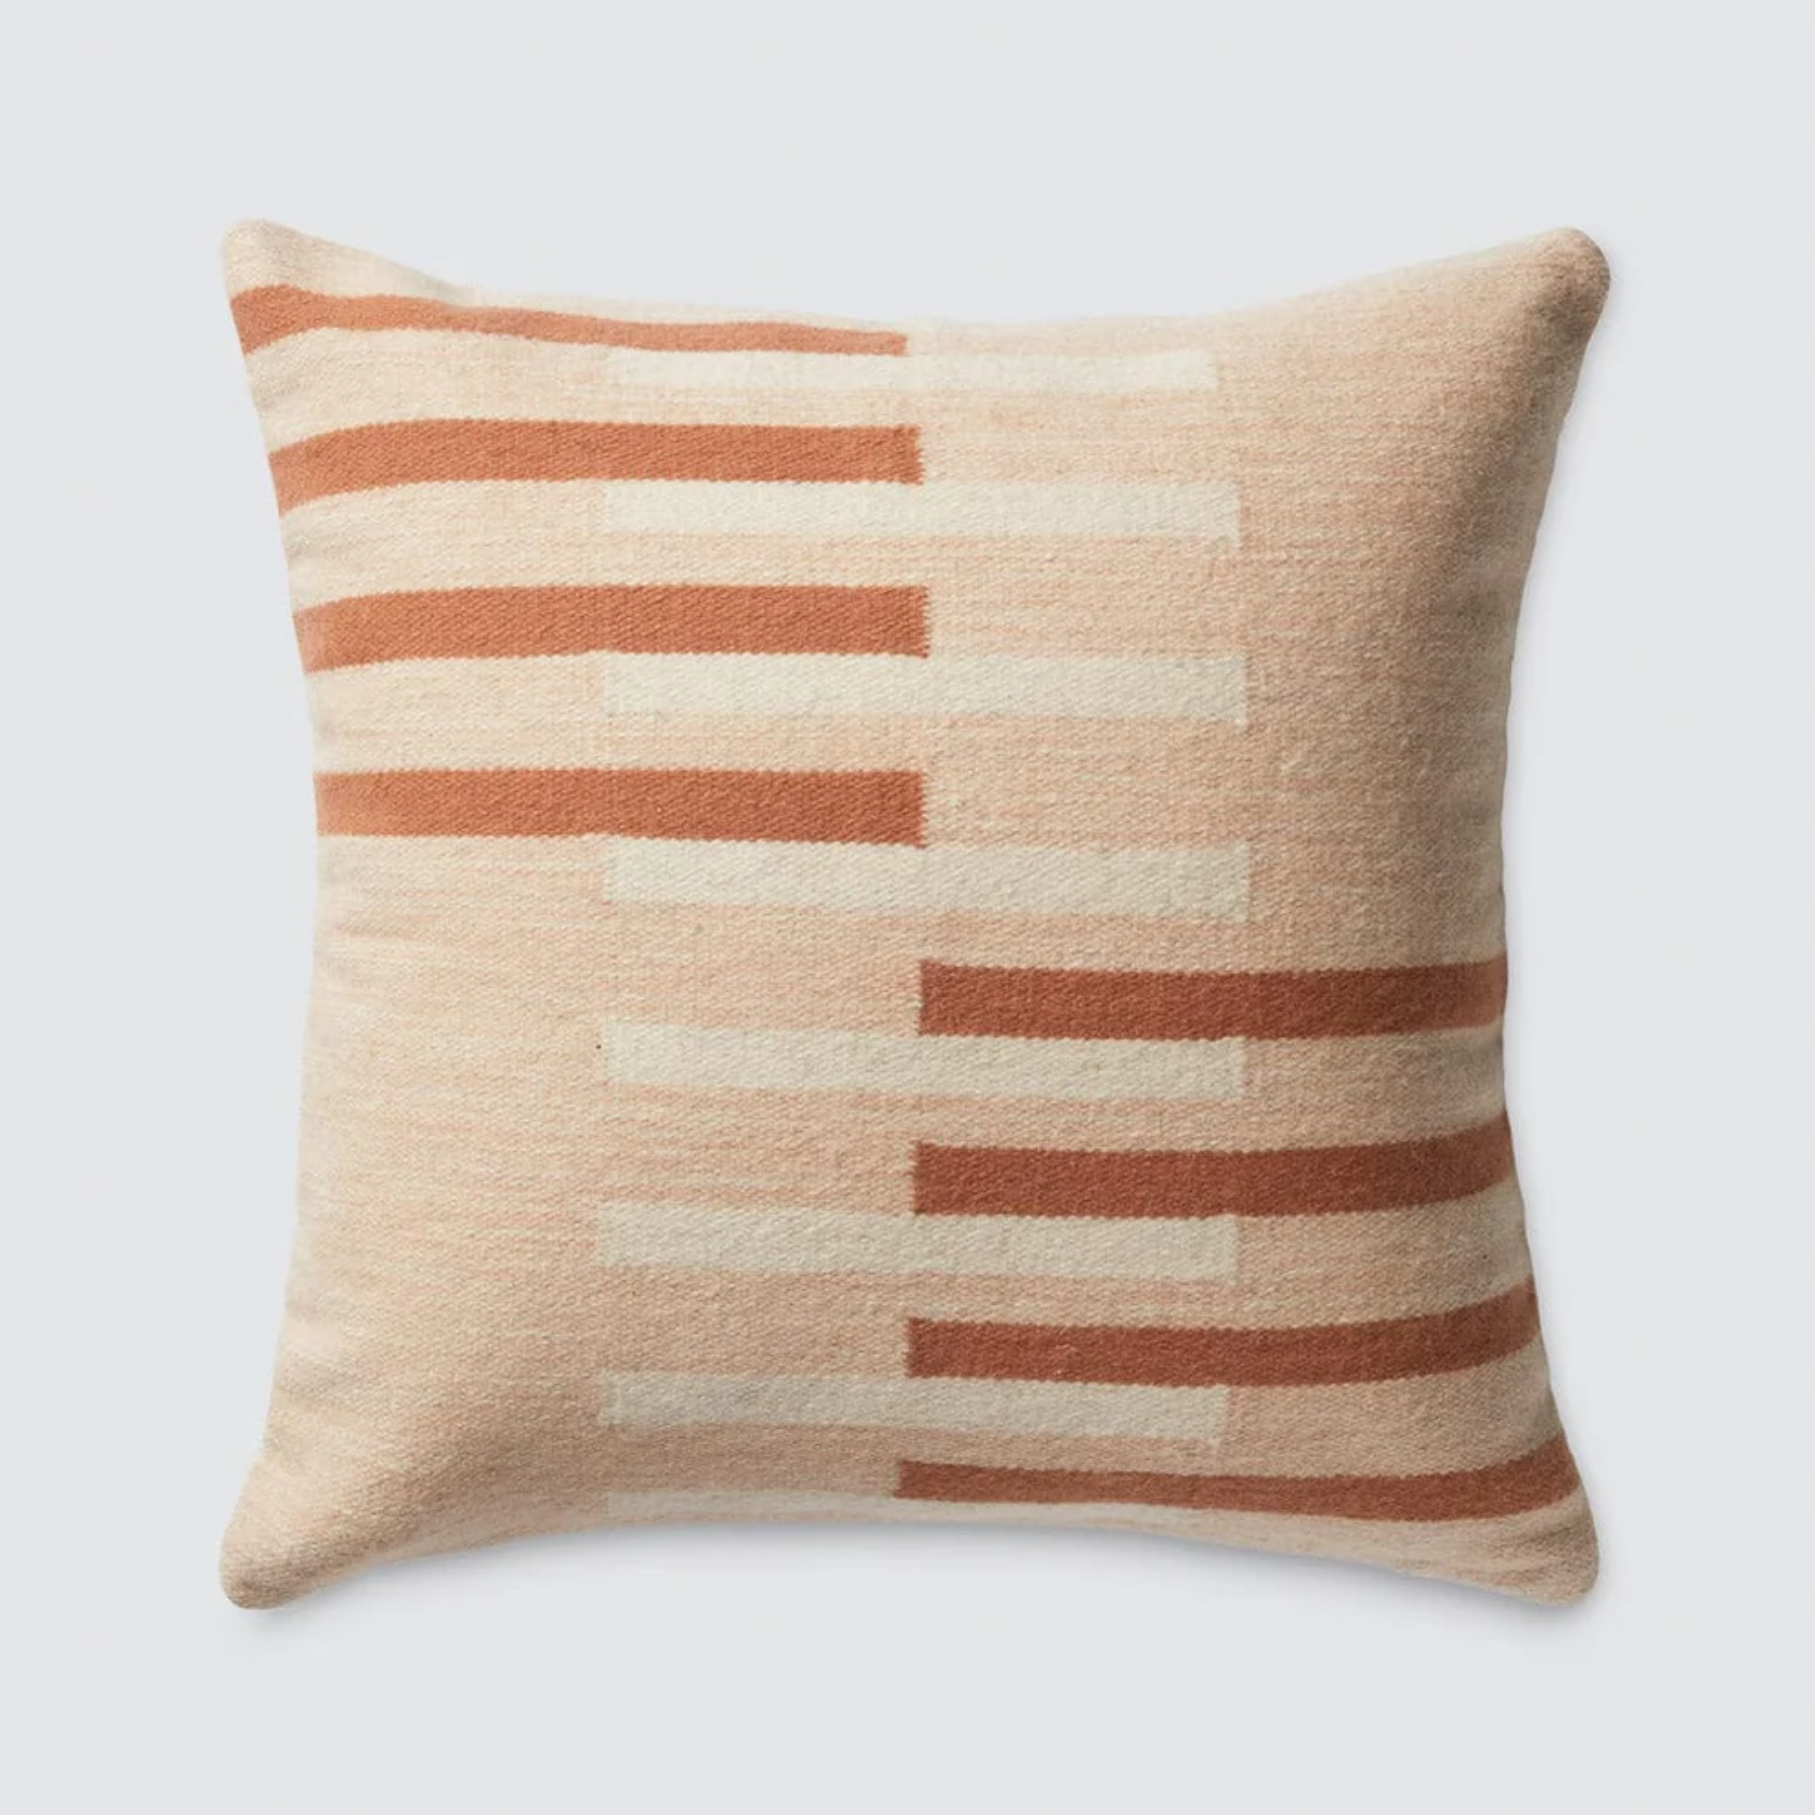 Handwoven Peruvian Throw Pillow, 20x20, $126